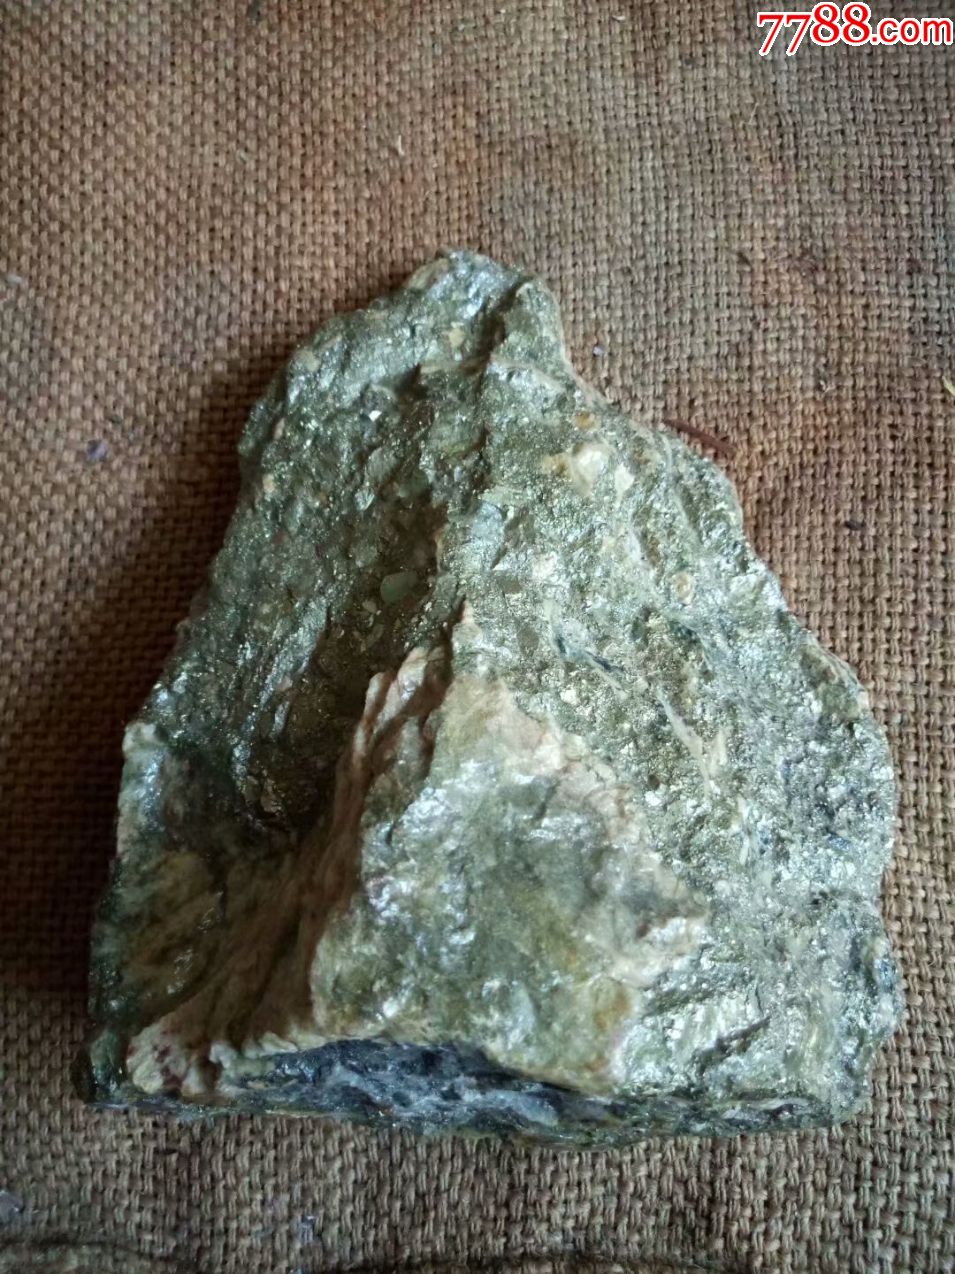 天然铜矿石摆件,原石